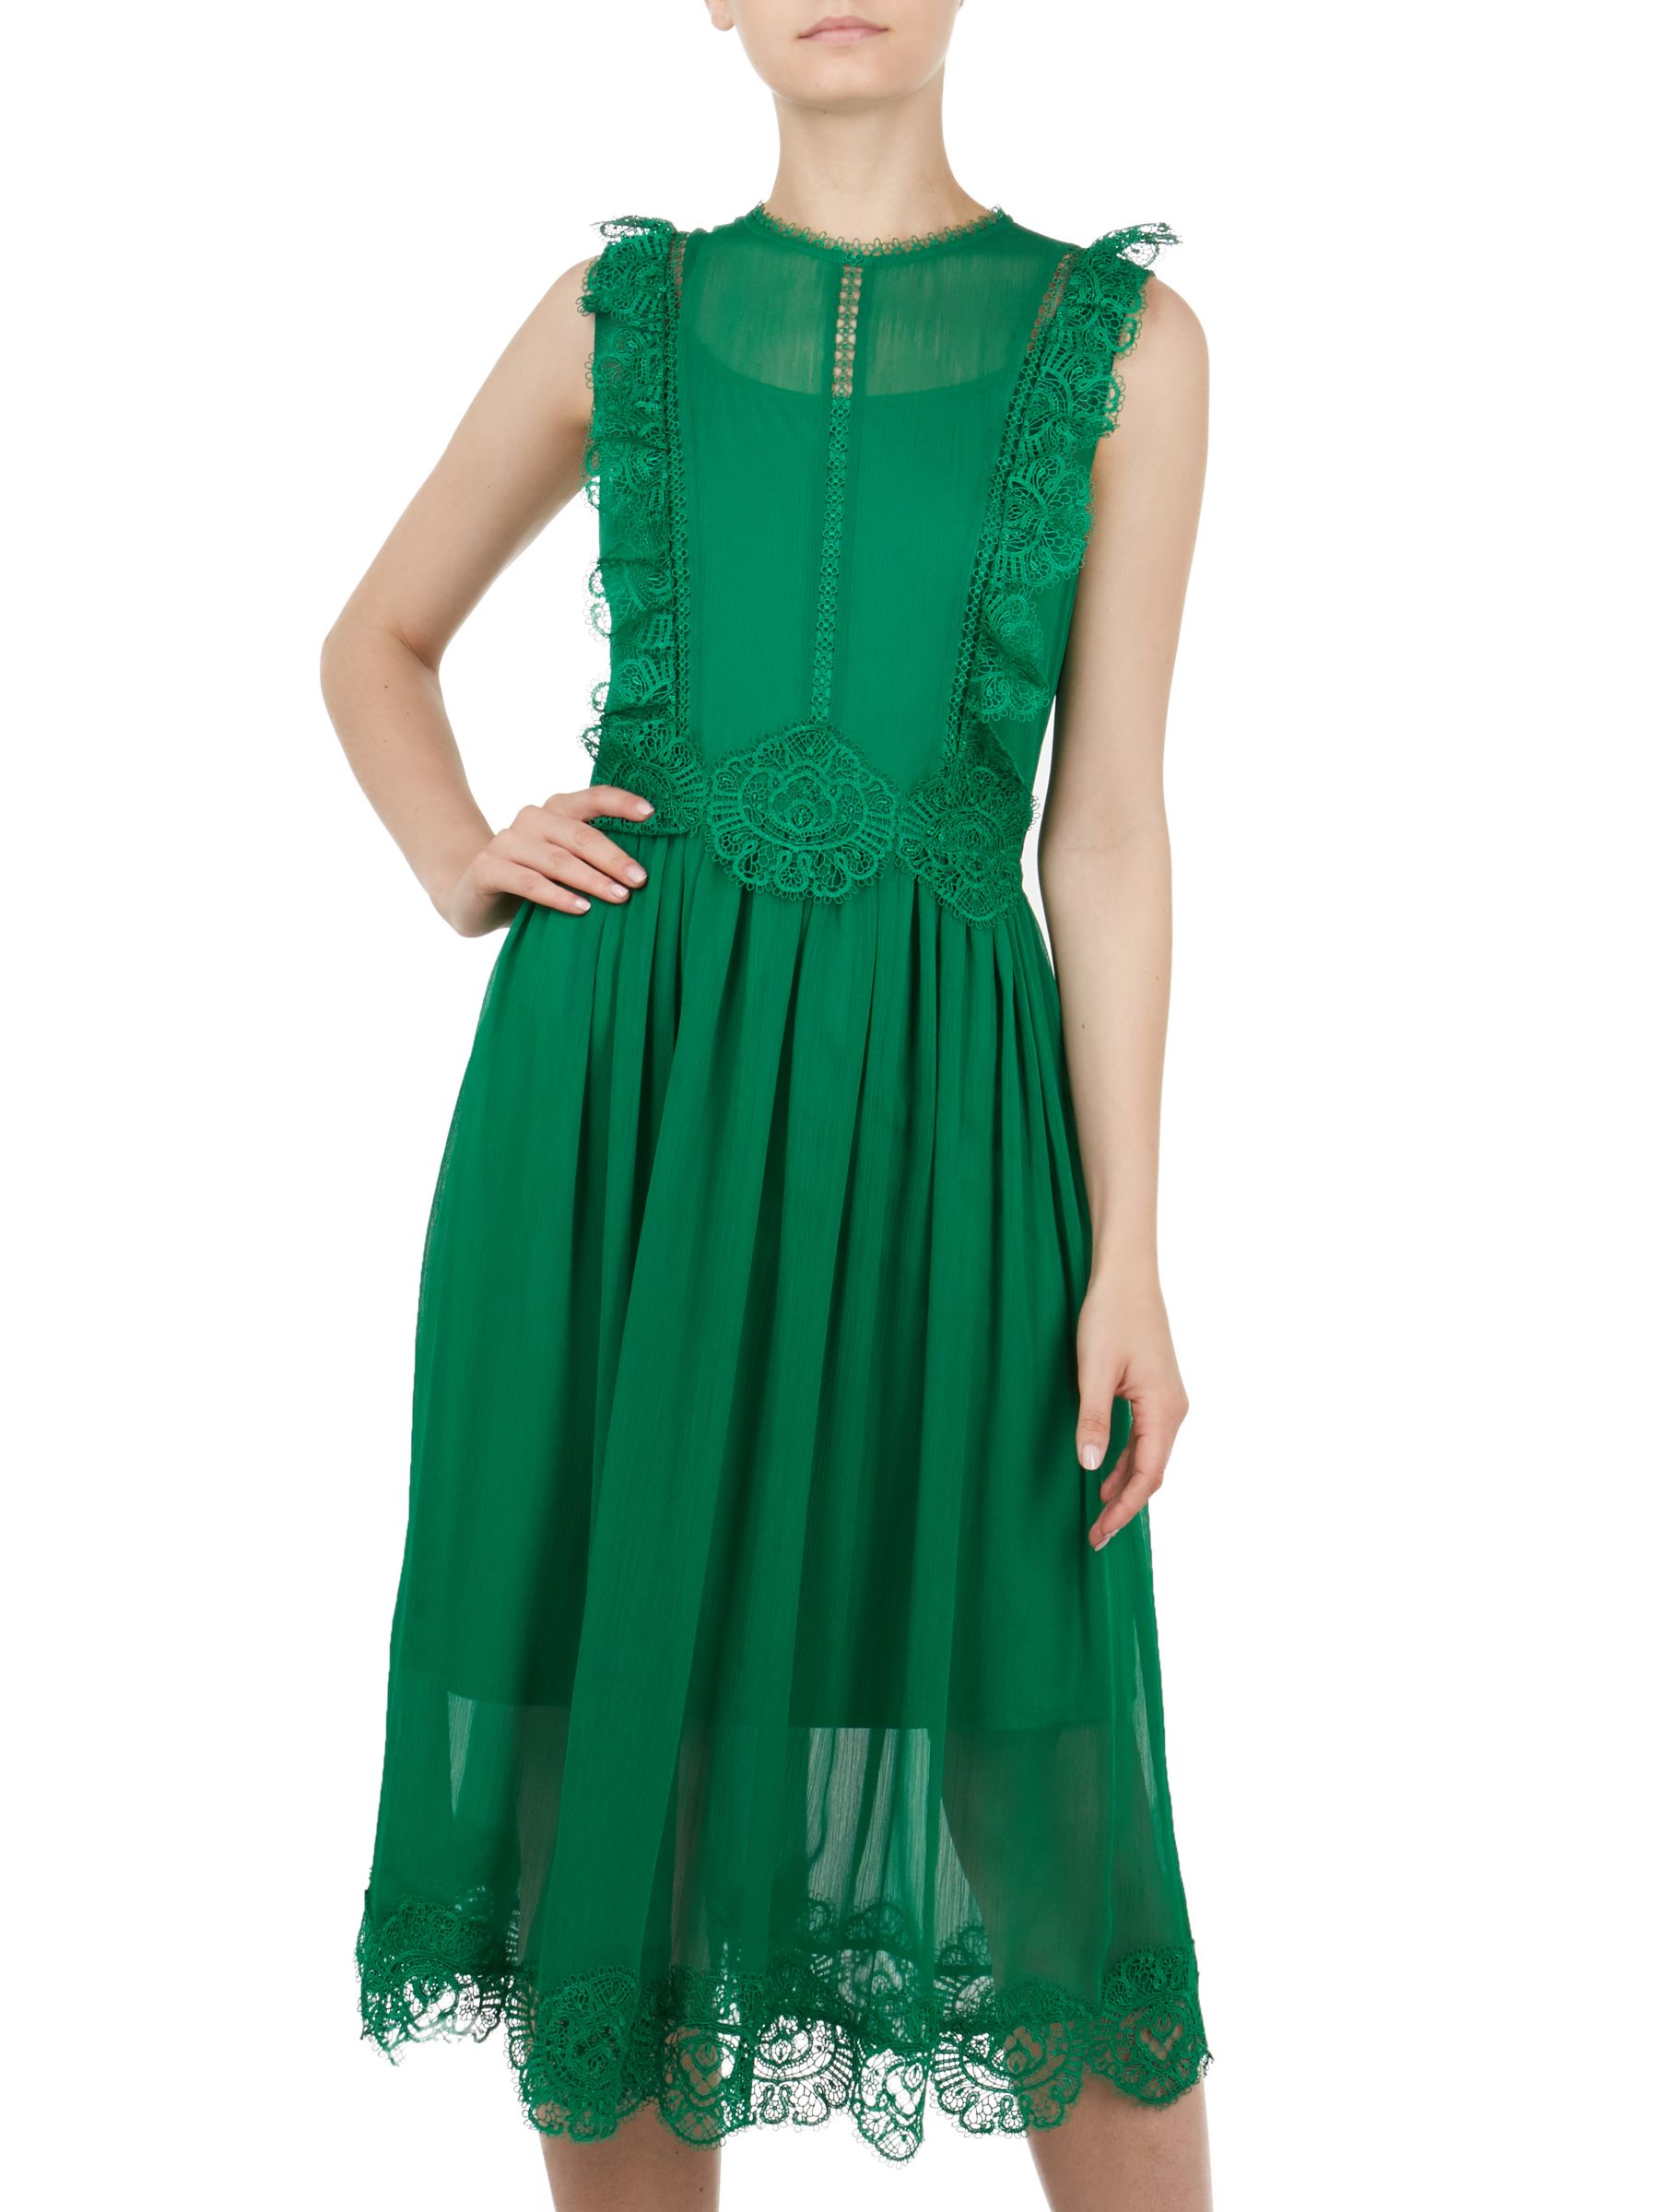 ted baker green dress